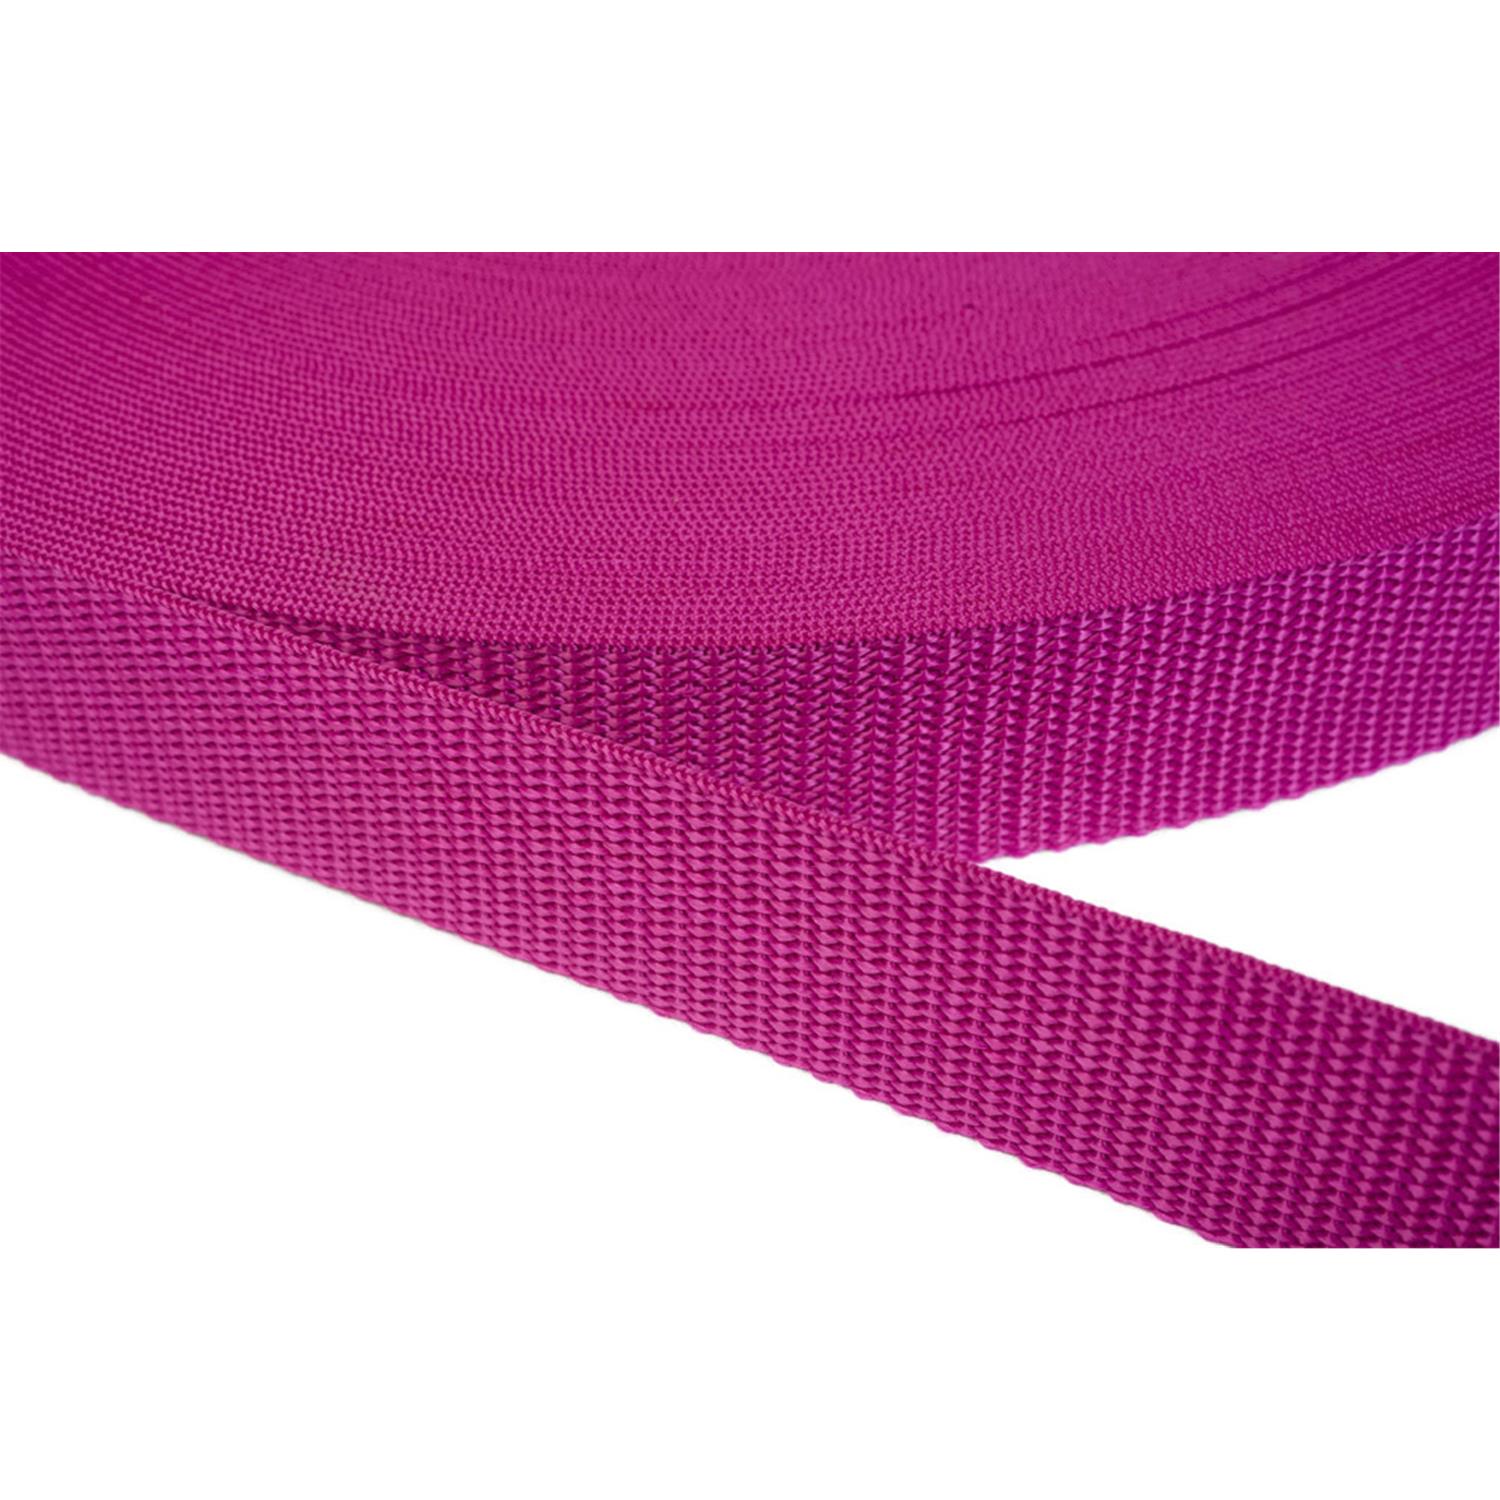 Gurtband 25mm breit aus Polypropylen in 41 Farben 17 - dunkles magenta 50 Meter